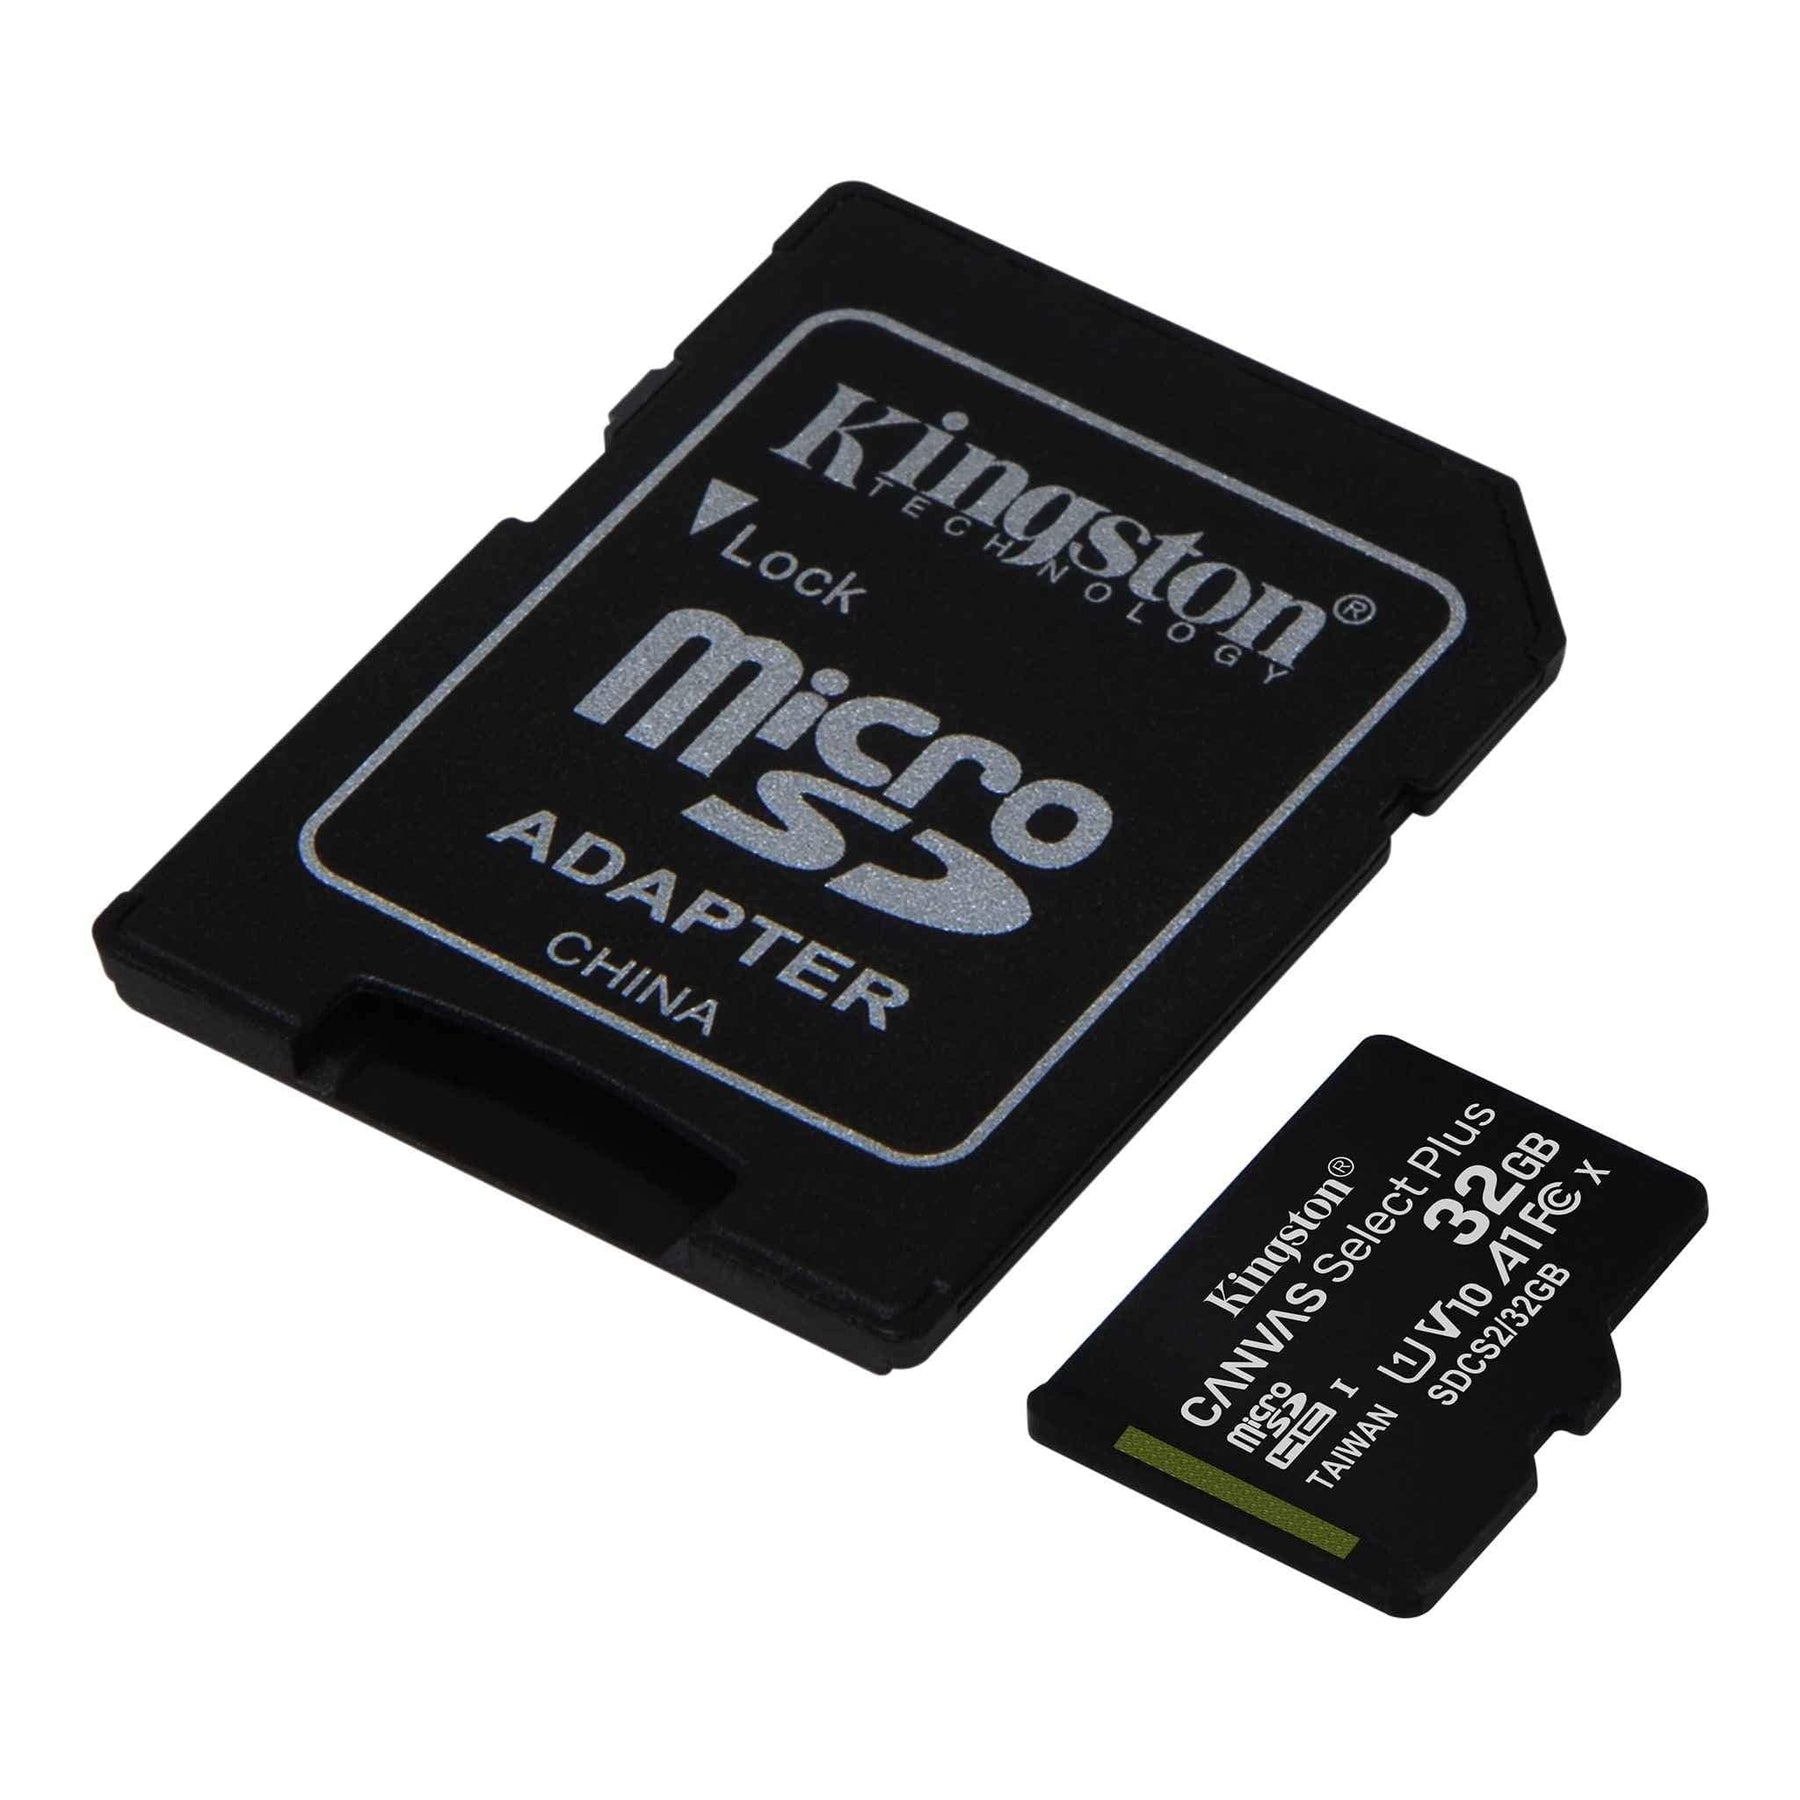 MicroSD 32 GB card